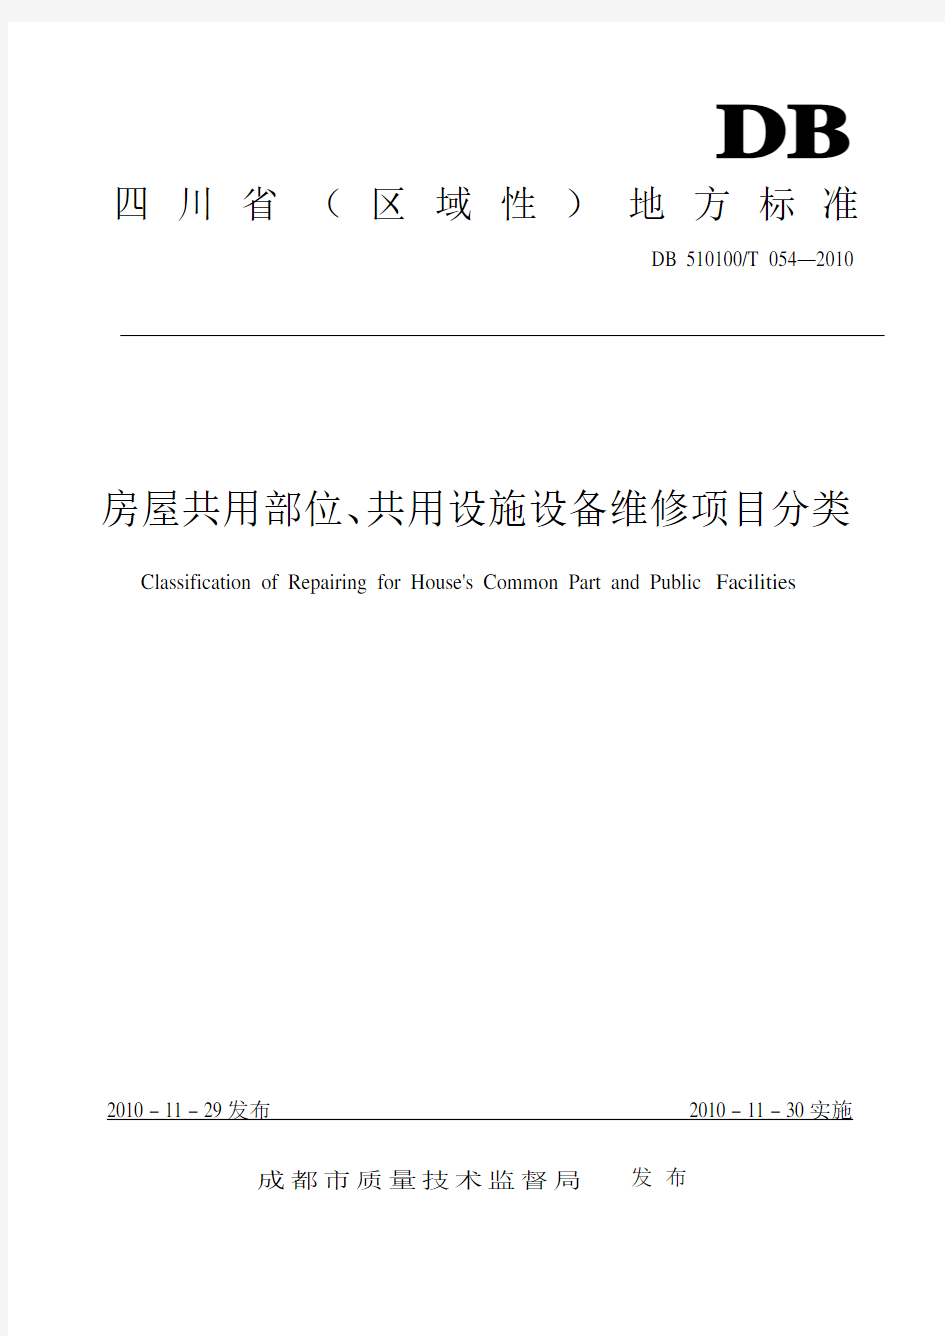 四川省(区域性)地方标准《房屋共用部位、共用设施设备维修项目分类》(整理版)